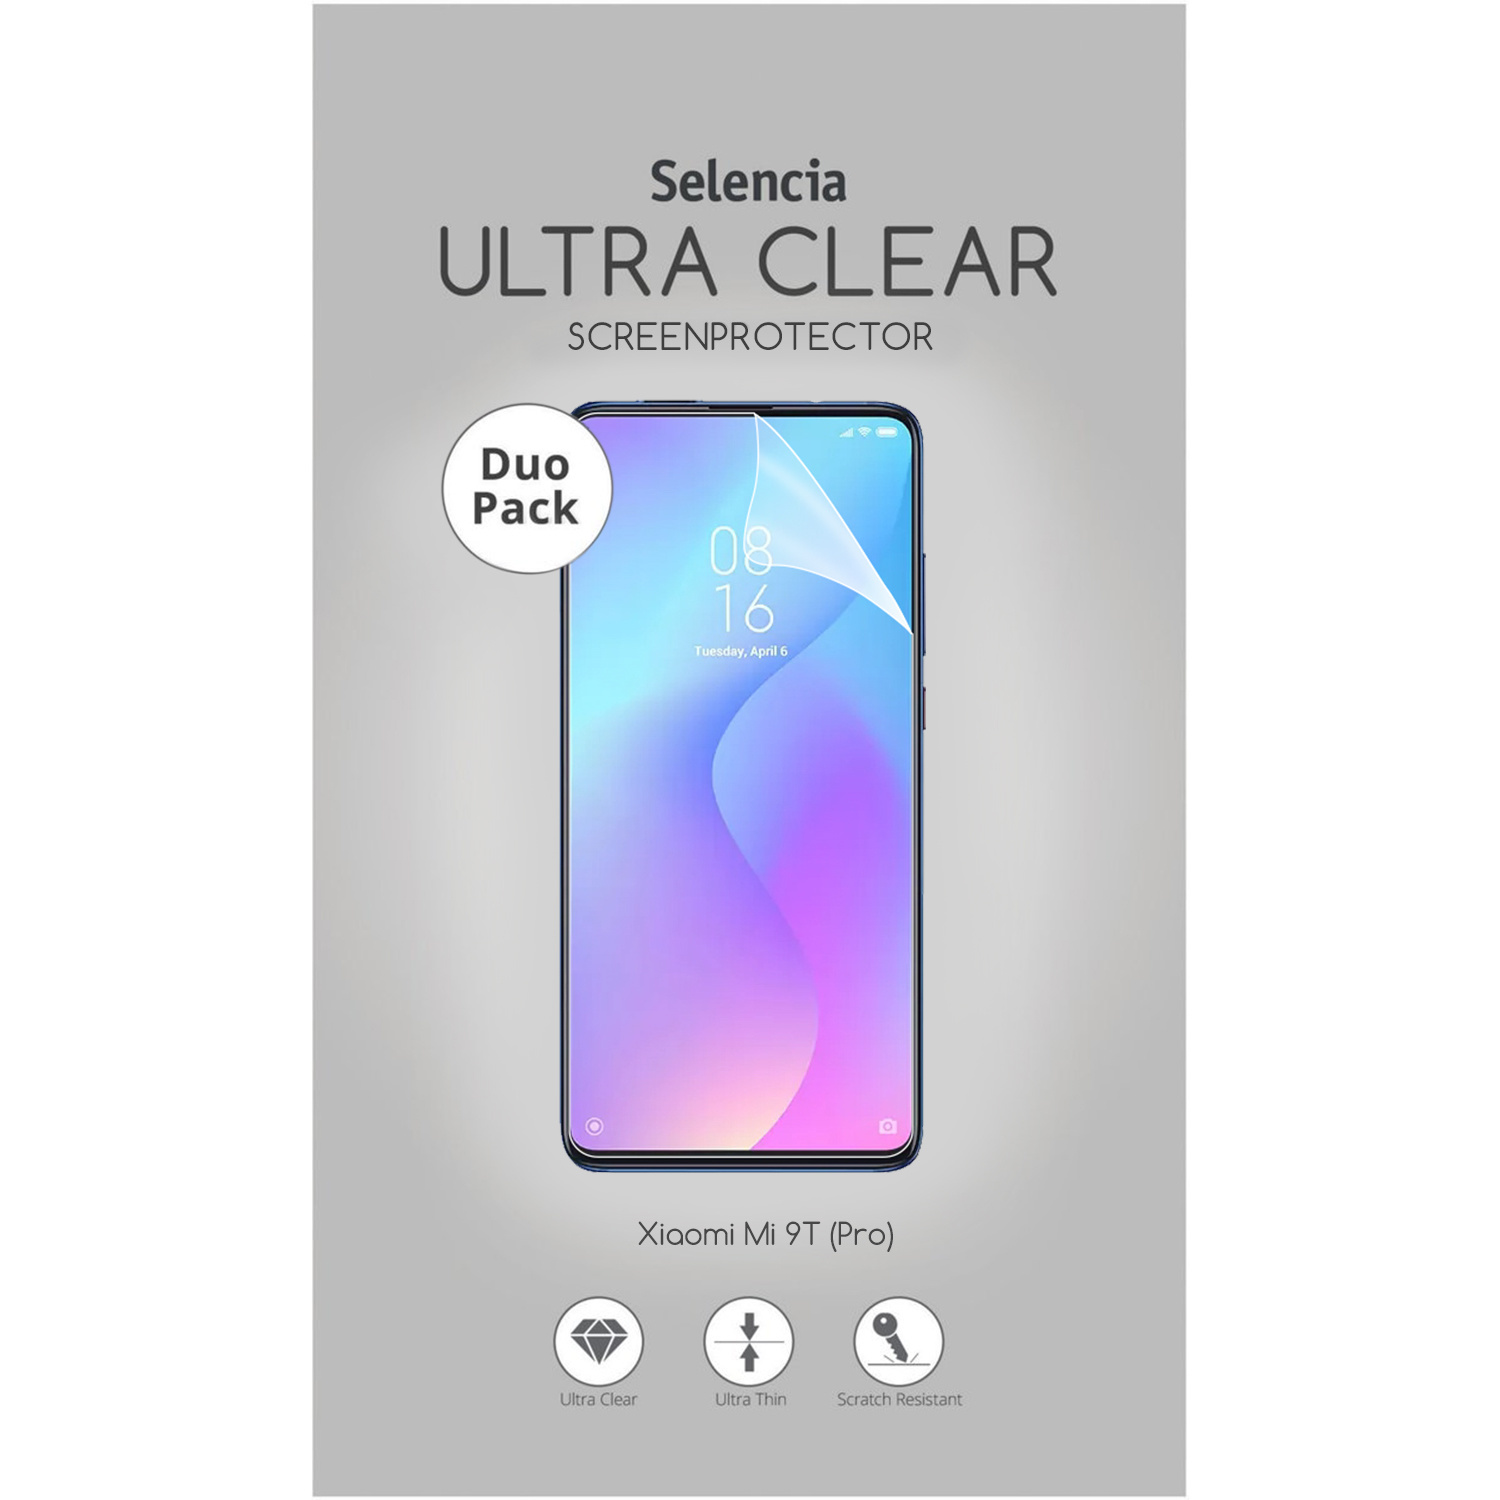 Selencia Pack Ultra Clear Screenprotector voor de Xiaomi Mi 9T Pro